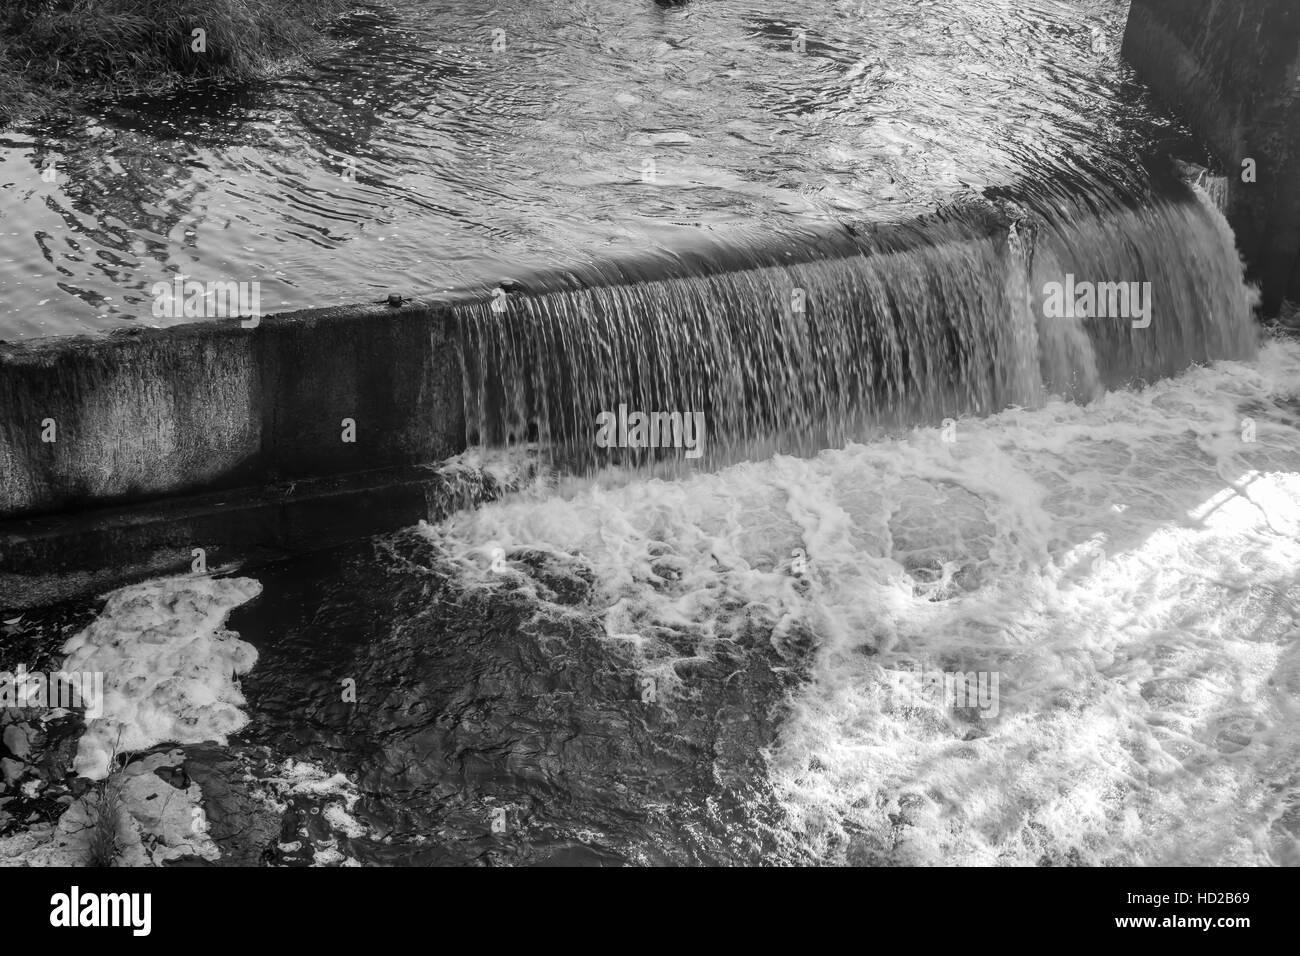 Agua fluyendo en Tumwater Falls crea una cortina brillante. Imagen en blanco y negro. Foto de stock